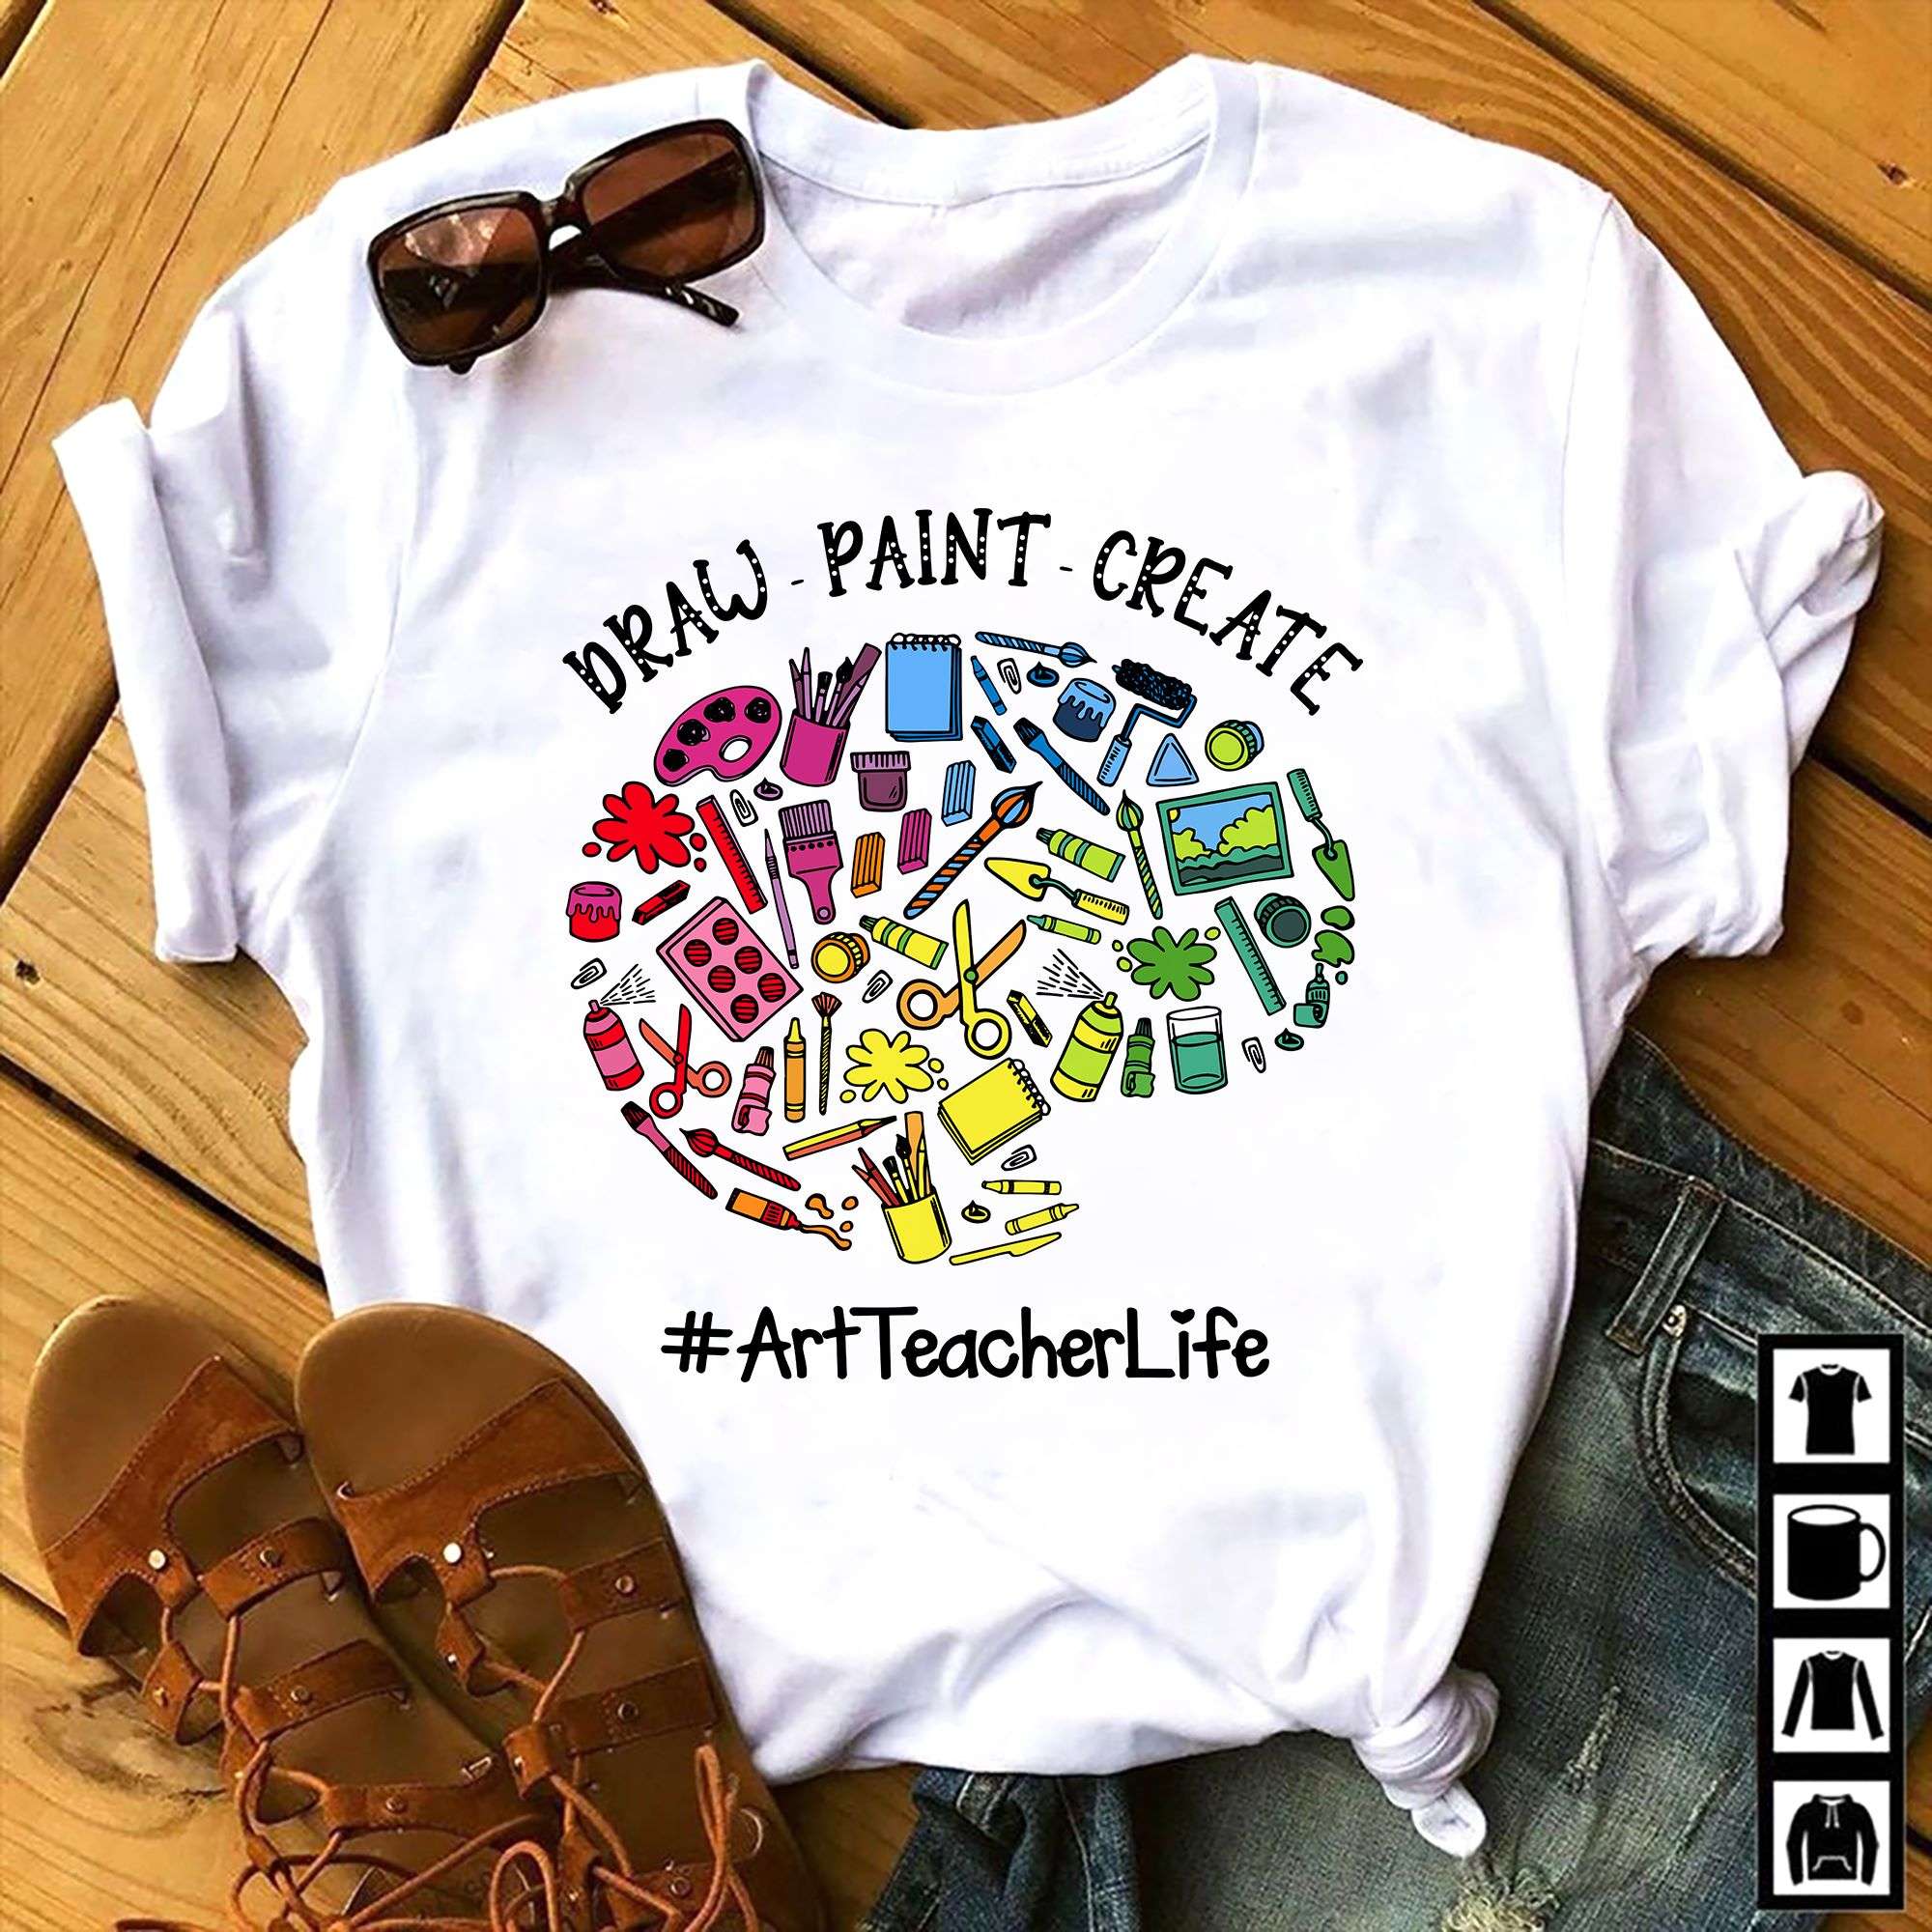 Draw paint creat - Art teacher life, T-shirt for art teacher